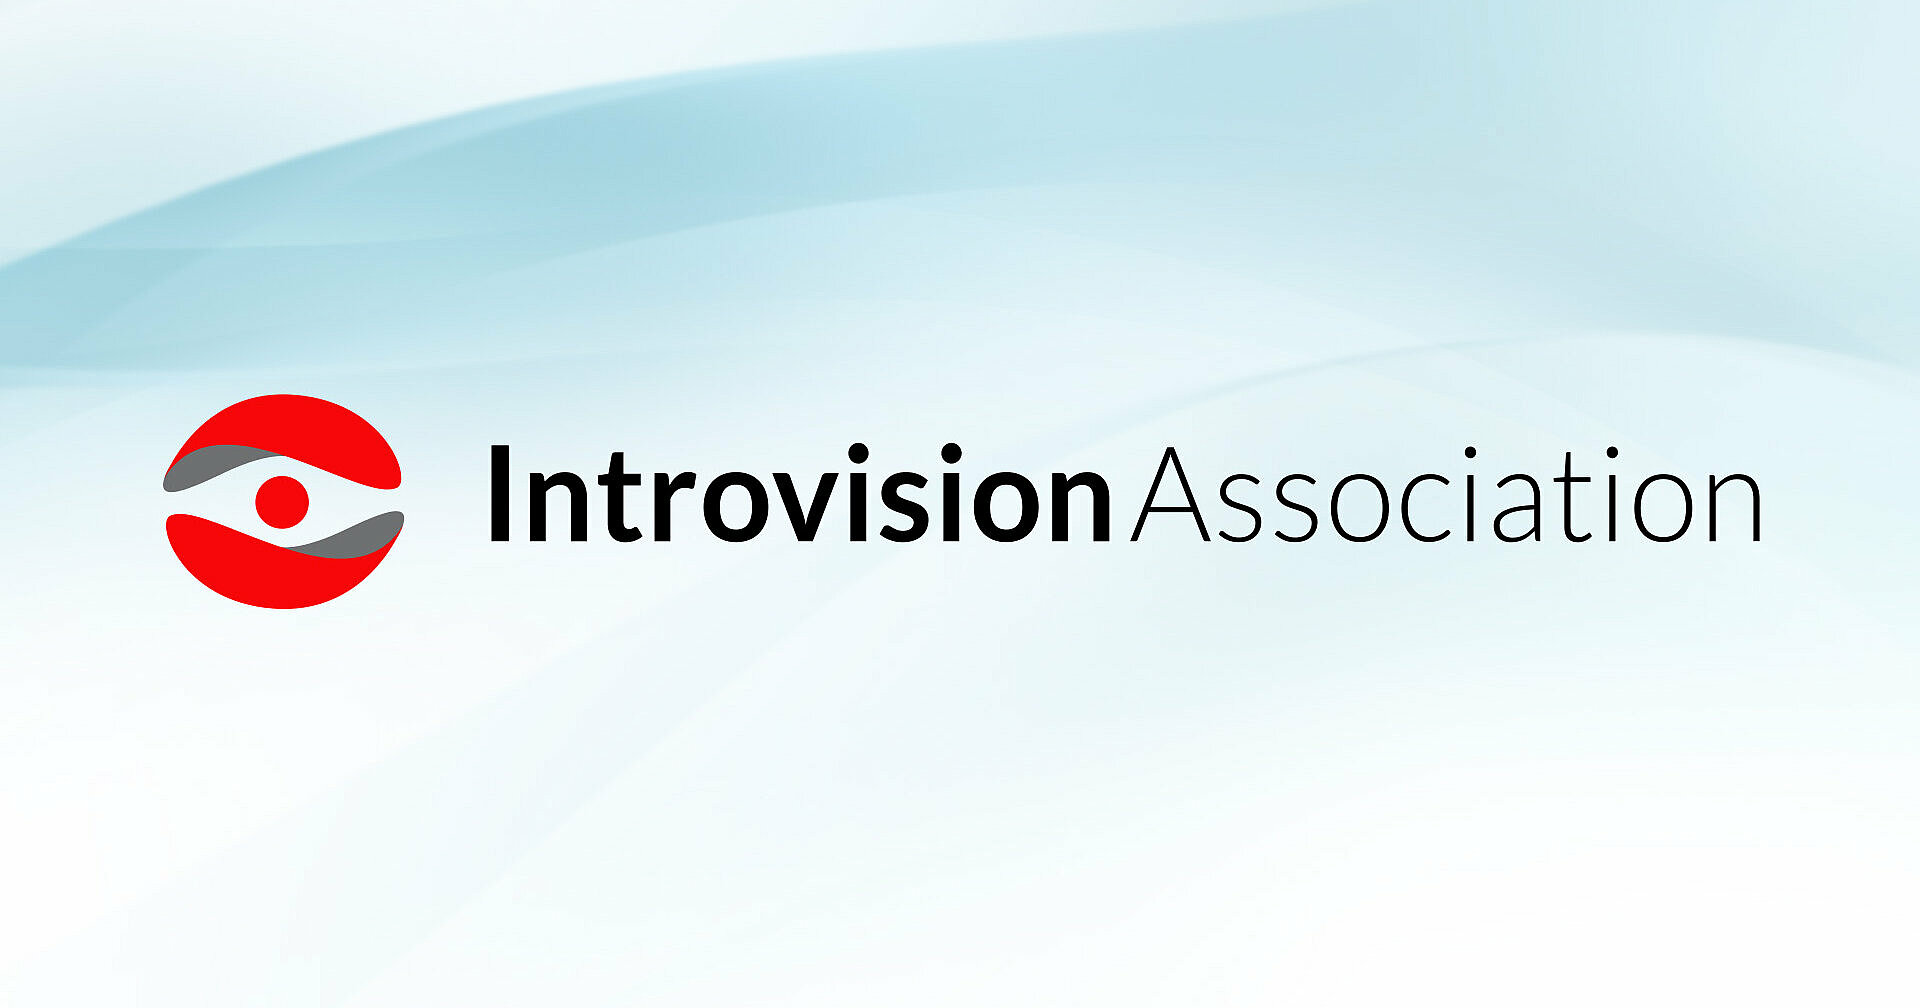 (c) Introvision-association.com